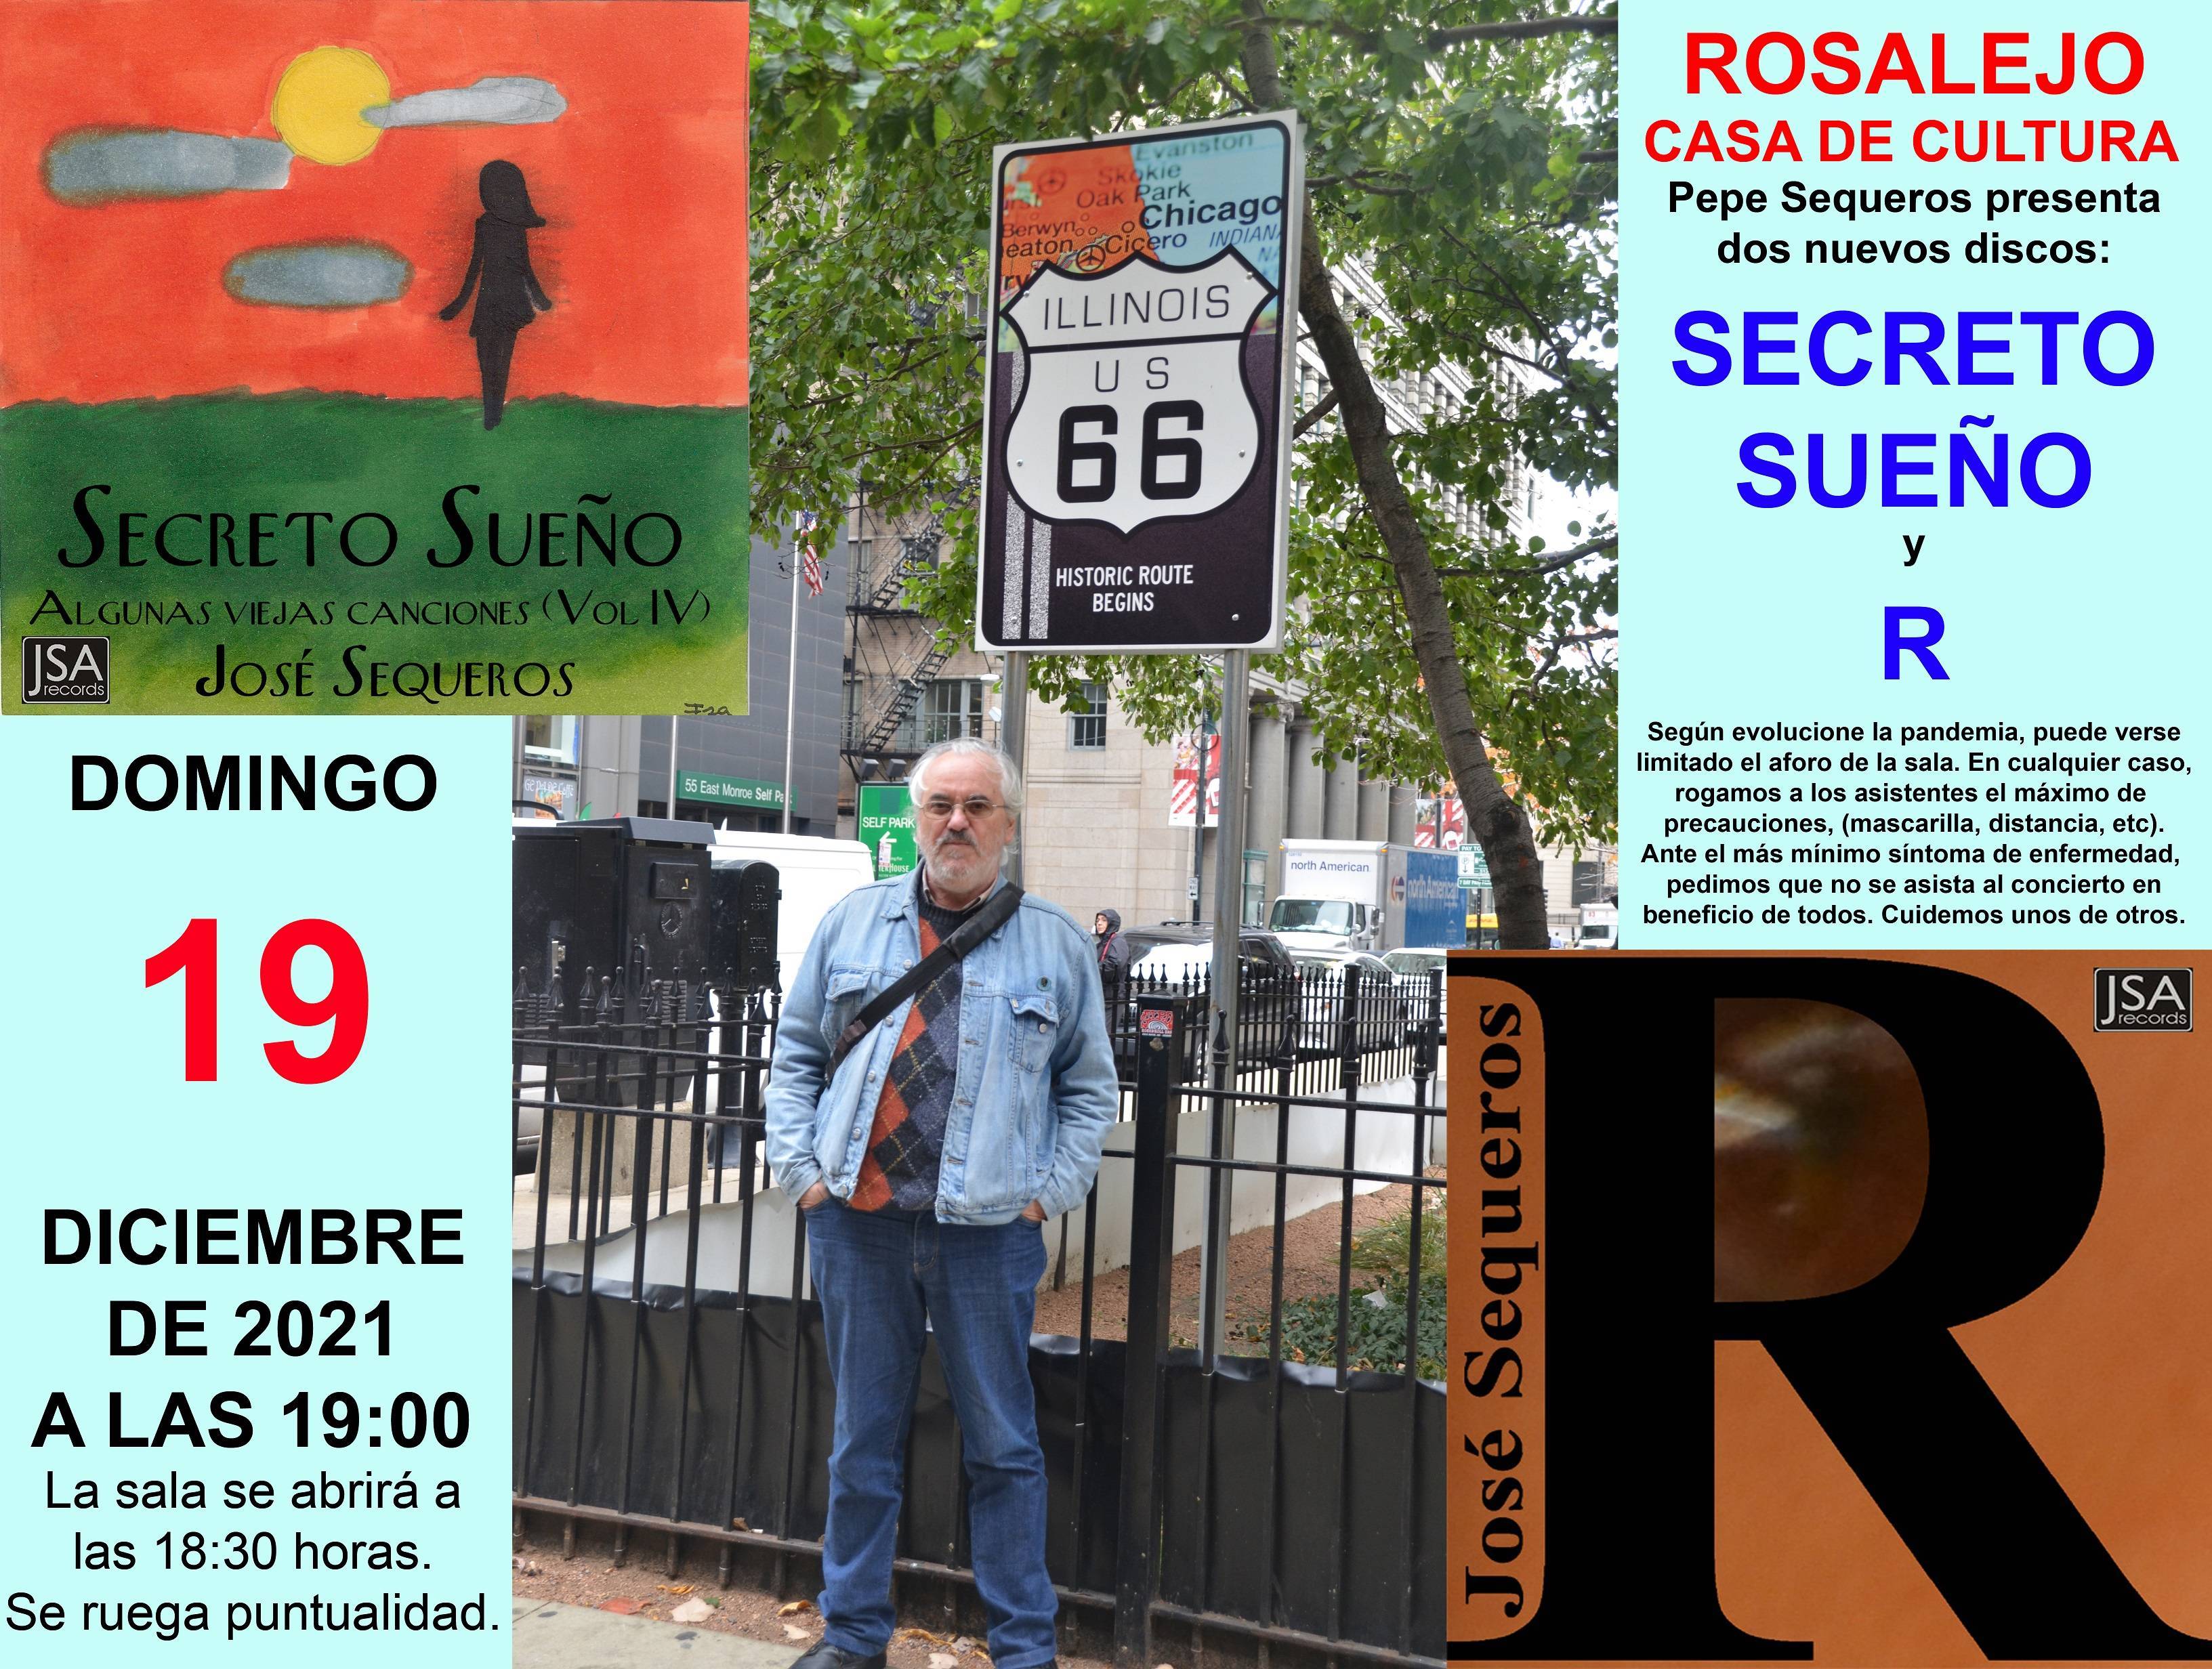 Presentación de discos 'Secreto sueño' y 'R' (2021) - Rosalejo (Cáceres)